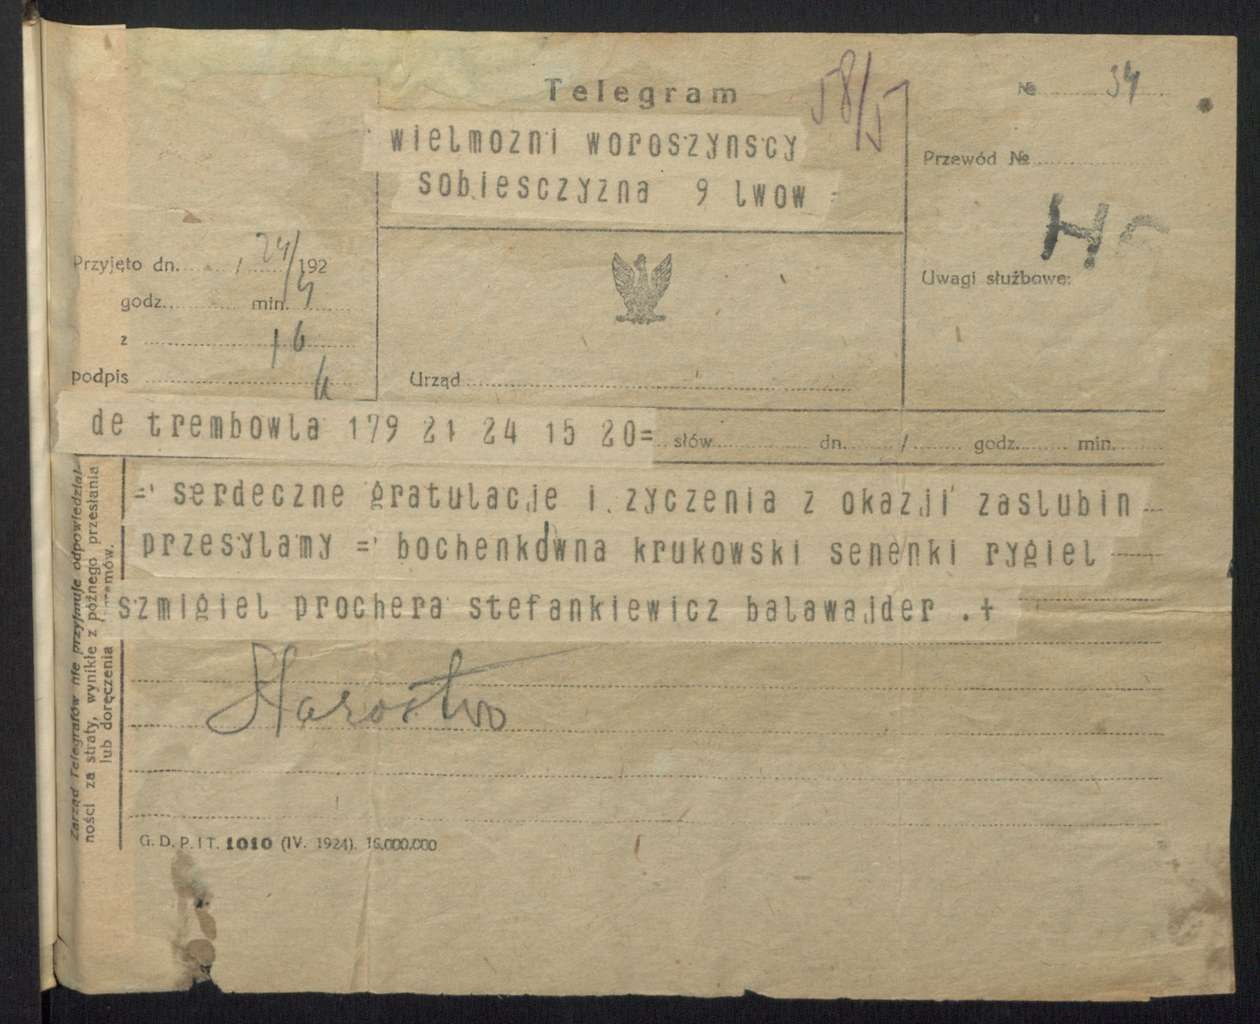  <p>Telegramy gratulacyjne Ireny Woroszyńskiej z&nbsp;okazji ślubu z&nbsp;Romanem Woroszyńskim zawartego w&nbsp;1925 r.</p>